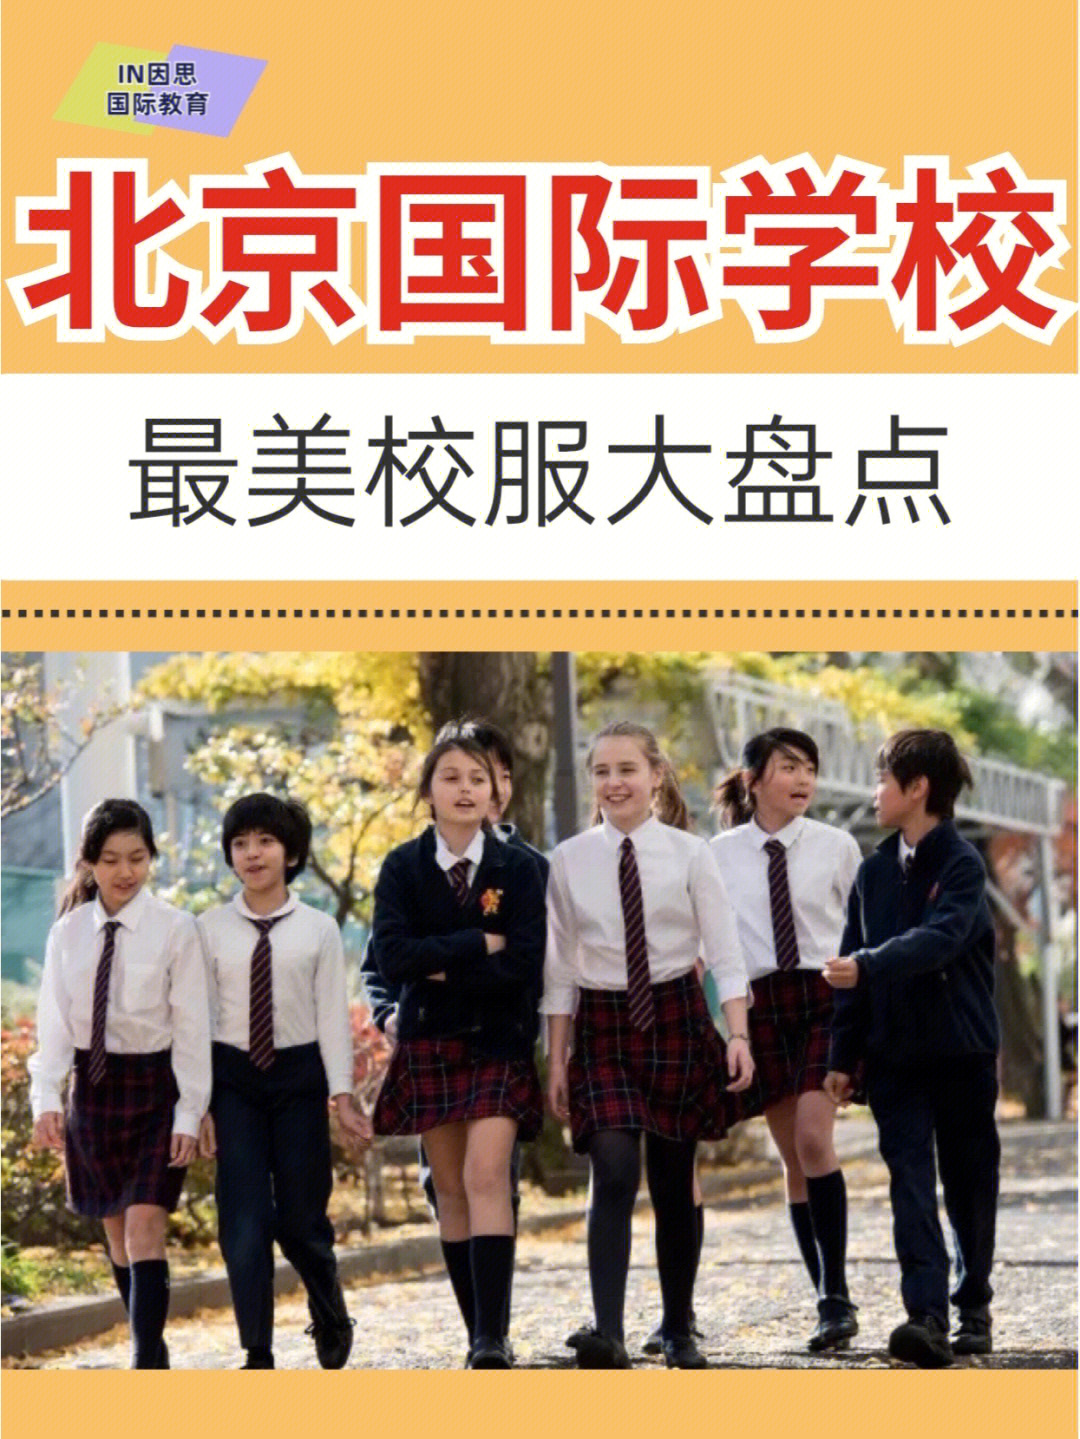 北京耀中国际学校校服图片